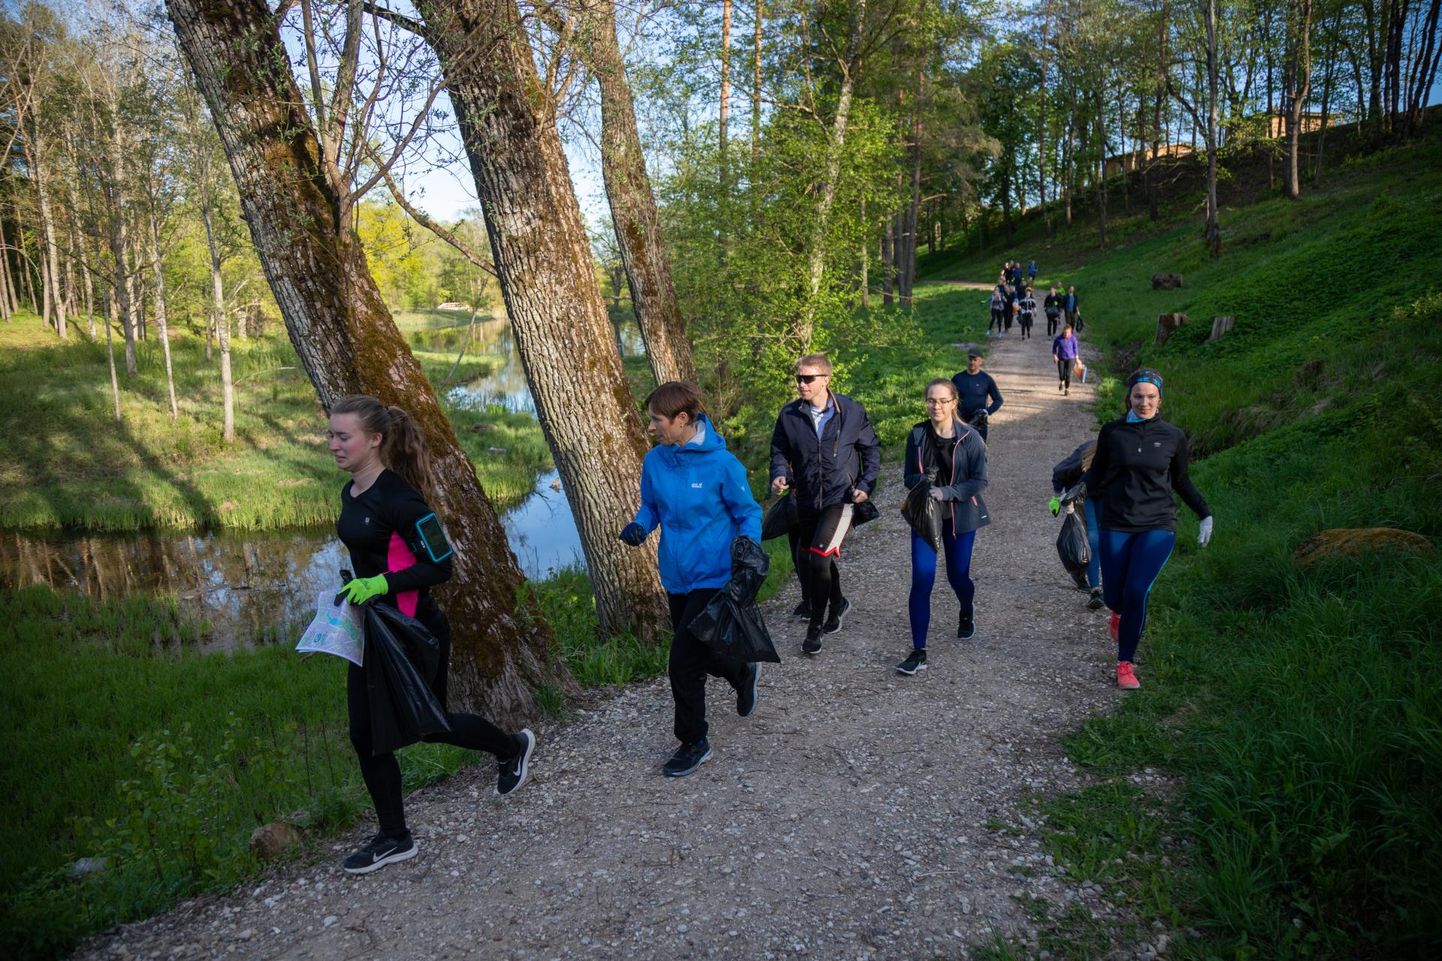 Viljandi gümnaasiumi õpilasesindus plaanib ka sel aastal korraldada prügijooksu. Pilt on tehtud mullusest üritusest, millest võttis osa ka president Kersti Kaljulaid.